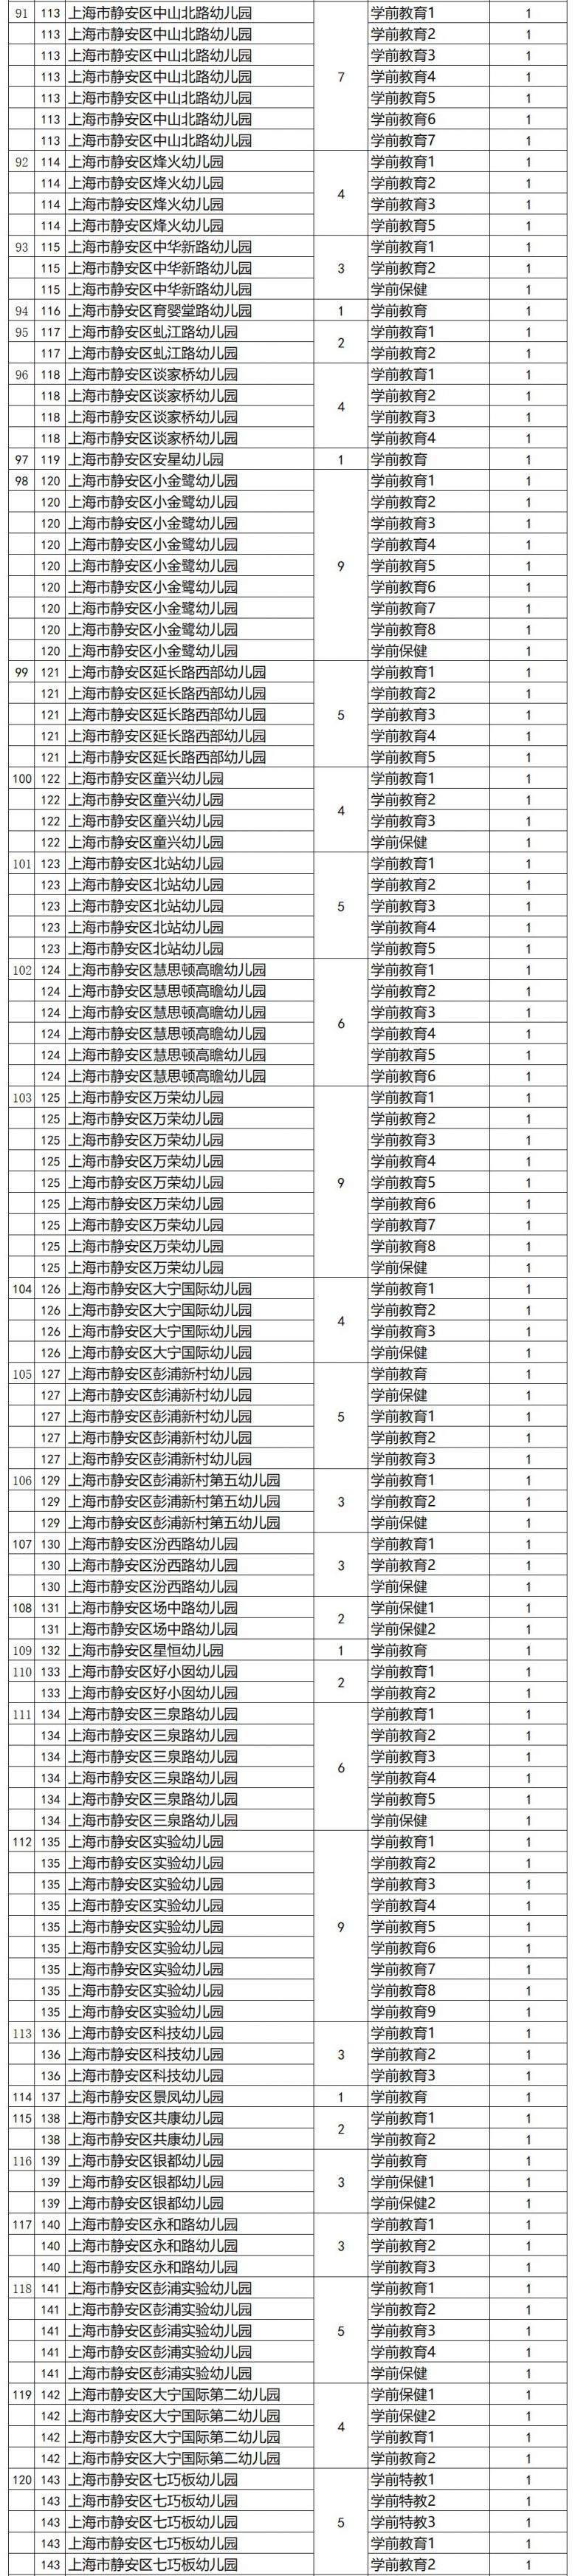 2020上海静安区教师招聘第二批 招聘567名教师